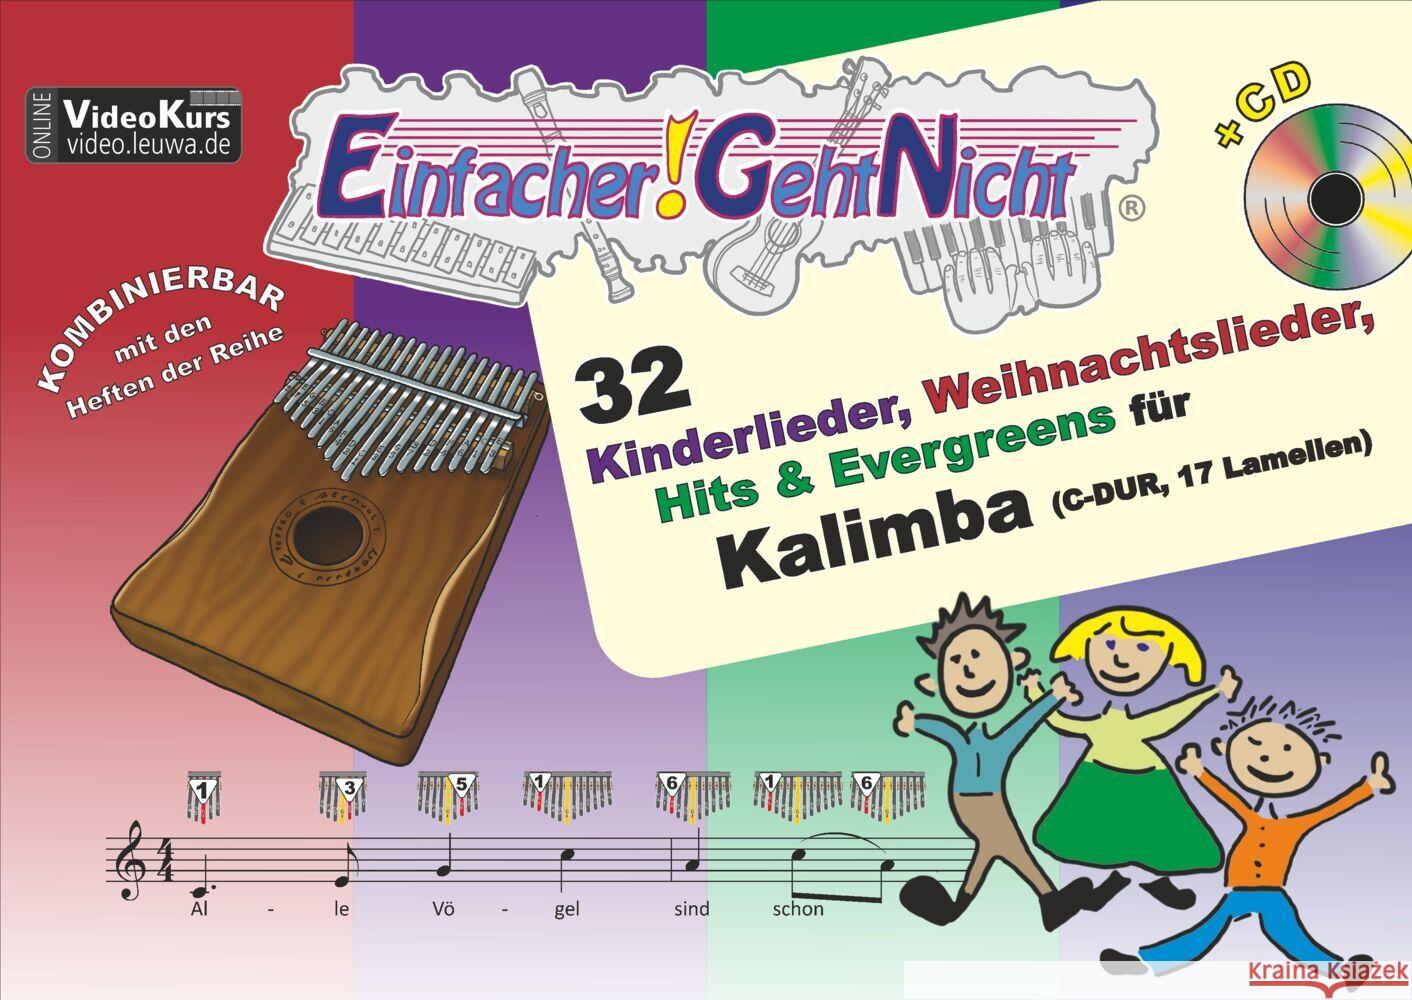 Einfacher!-Geht-Nicht: 32 Kinderlieder, Weihnachtslieder, Hits & Evergreens für Kalimba (C-DUR, 17 Lamellen) mit Audio-CD Leuchtner, Martin, Waizmann, Bruno 9783940533777